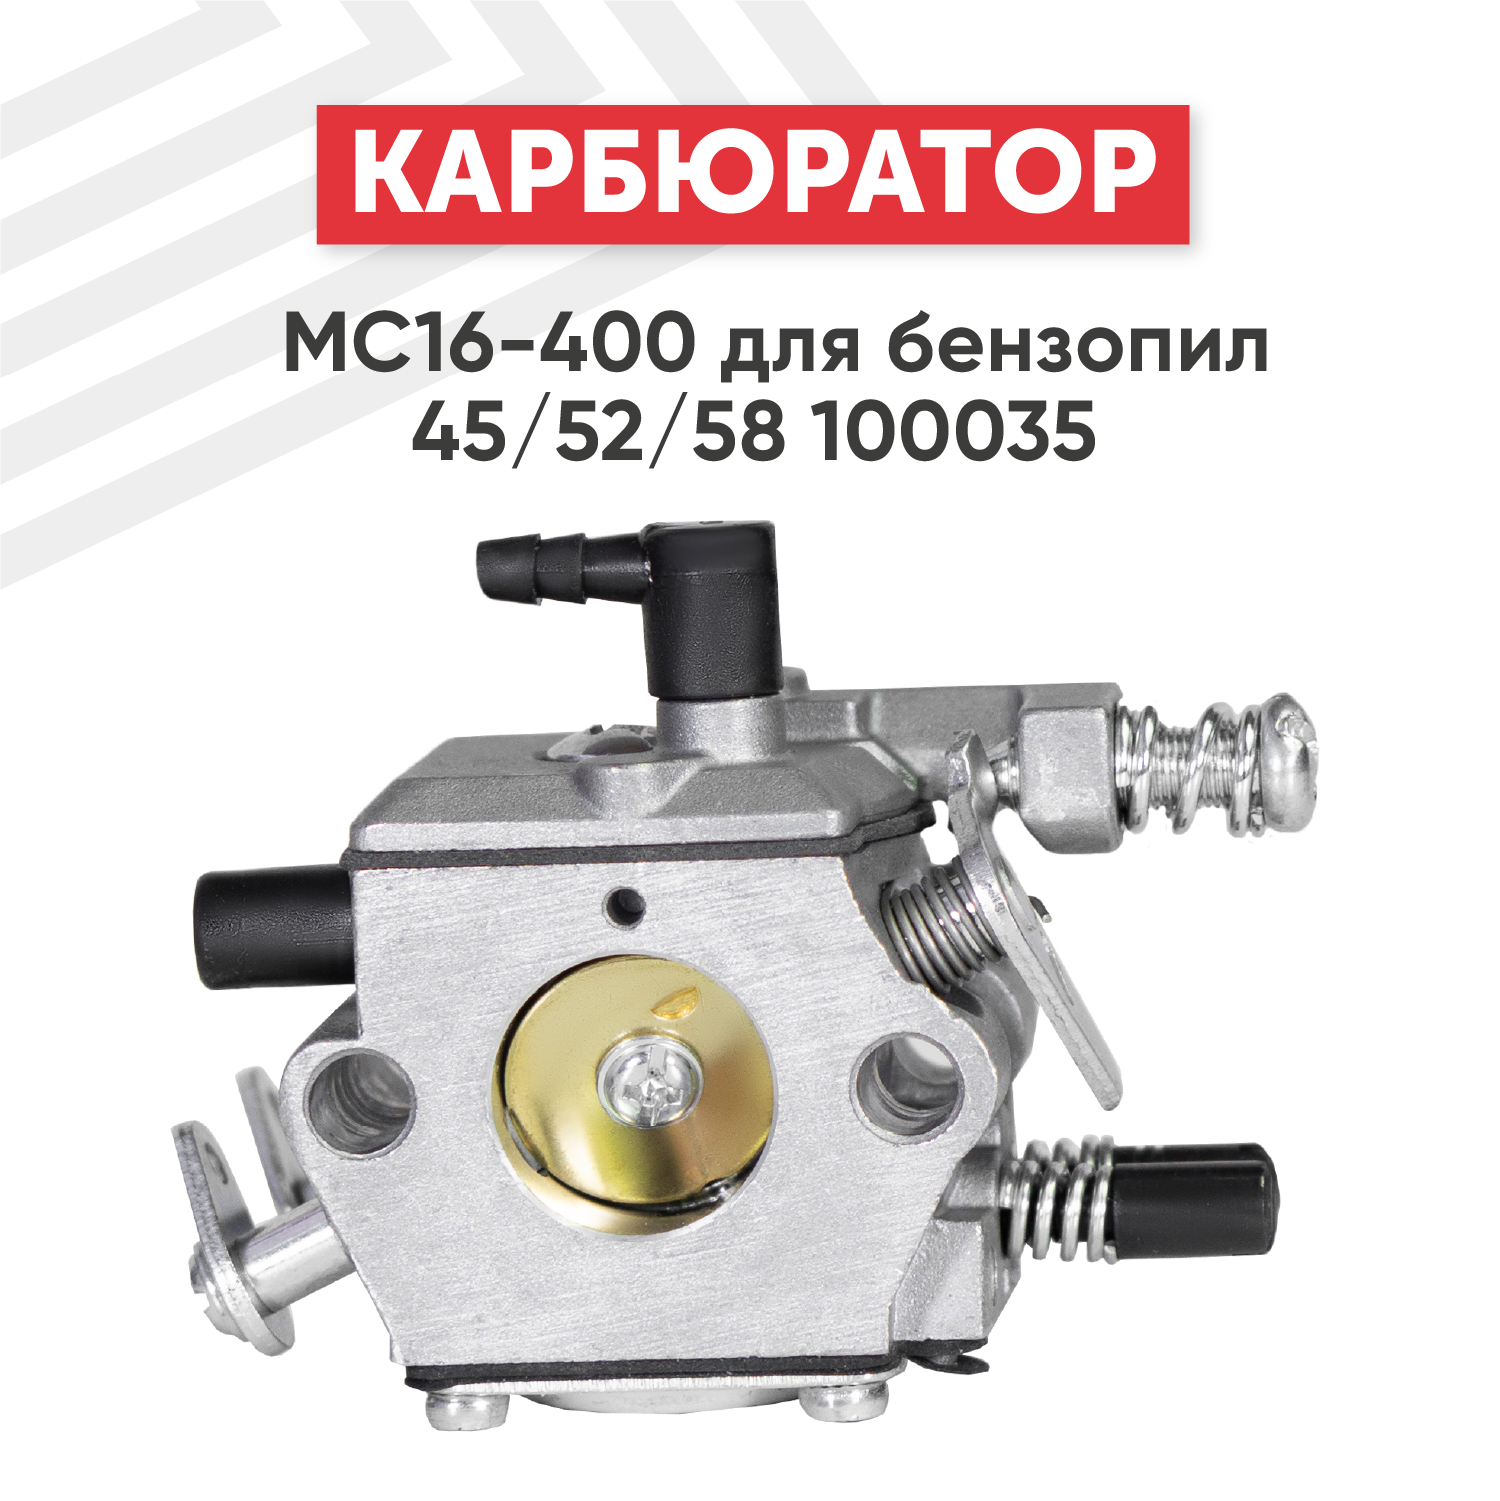 Карбюратор MC16-400 для бензопилы (цепной пилы) 45/52/58 100035